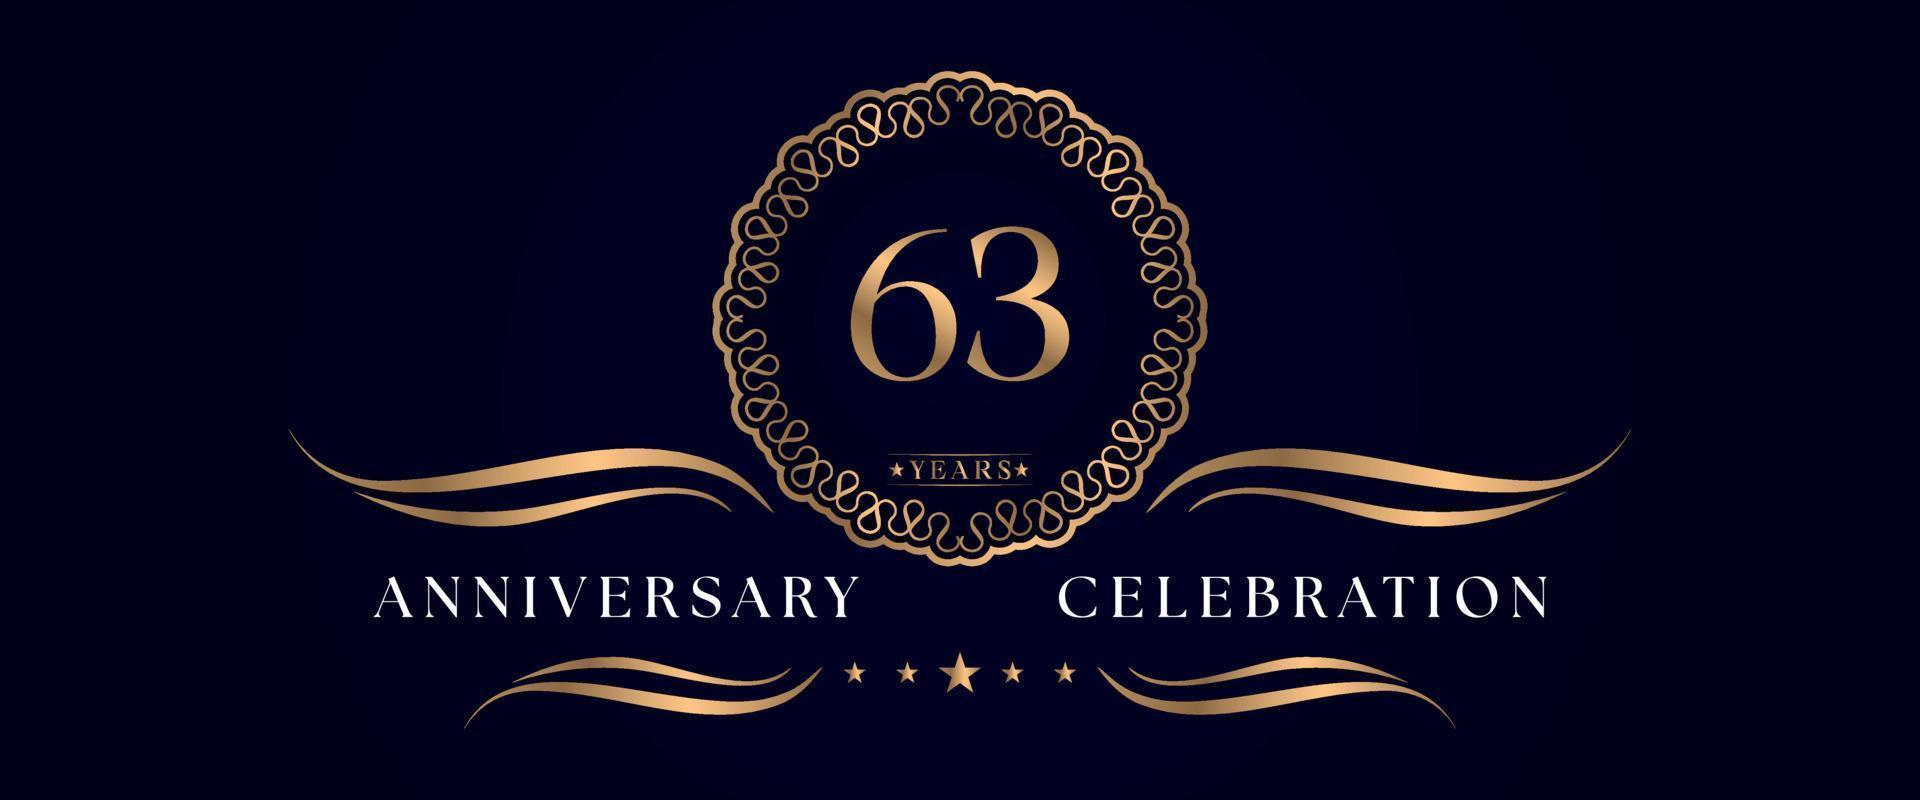 Celebrazione dell'anniversario di 63 anni con elegante cornice circolare isolata su sfondo blu scuro. disegno vettoriale per biglietto di auguri, festa di compleanno, matrimonio, festa evento, cerimonia. Logo dell'anniversario di 63 anni.